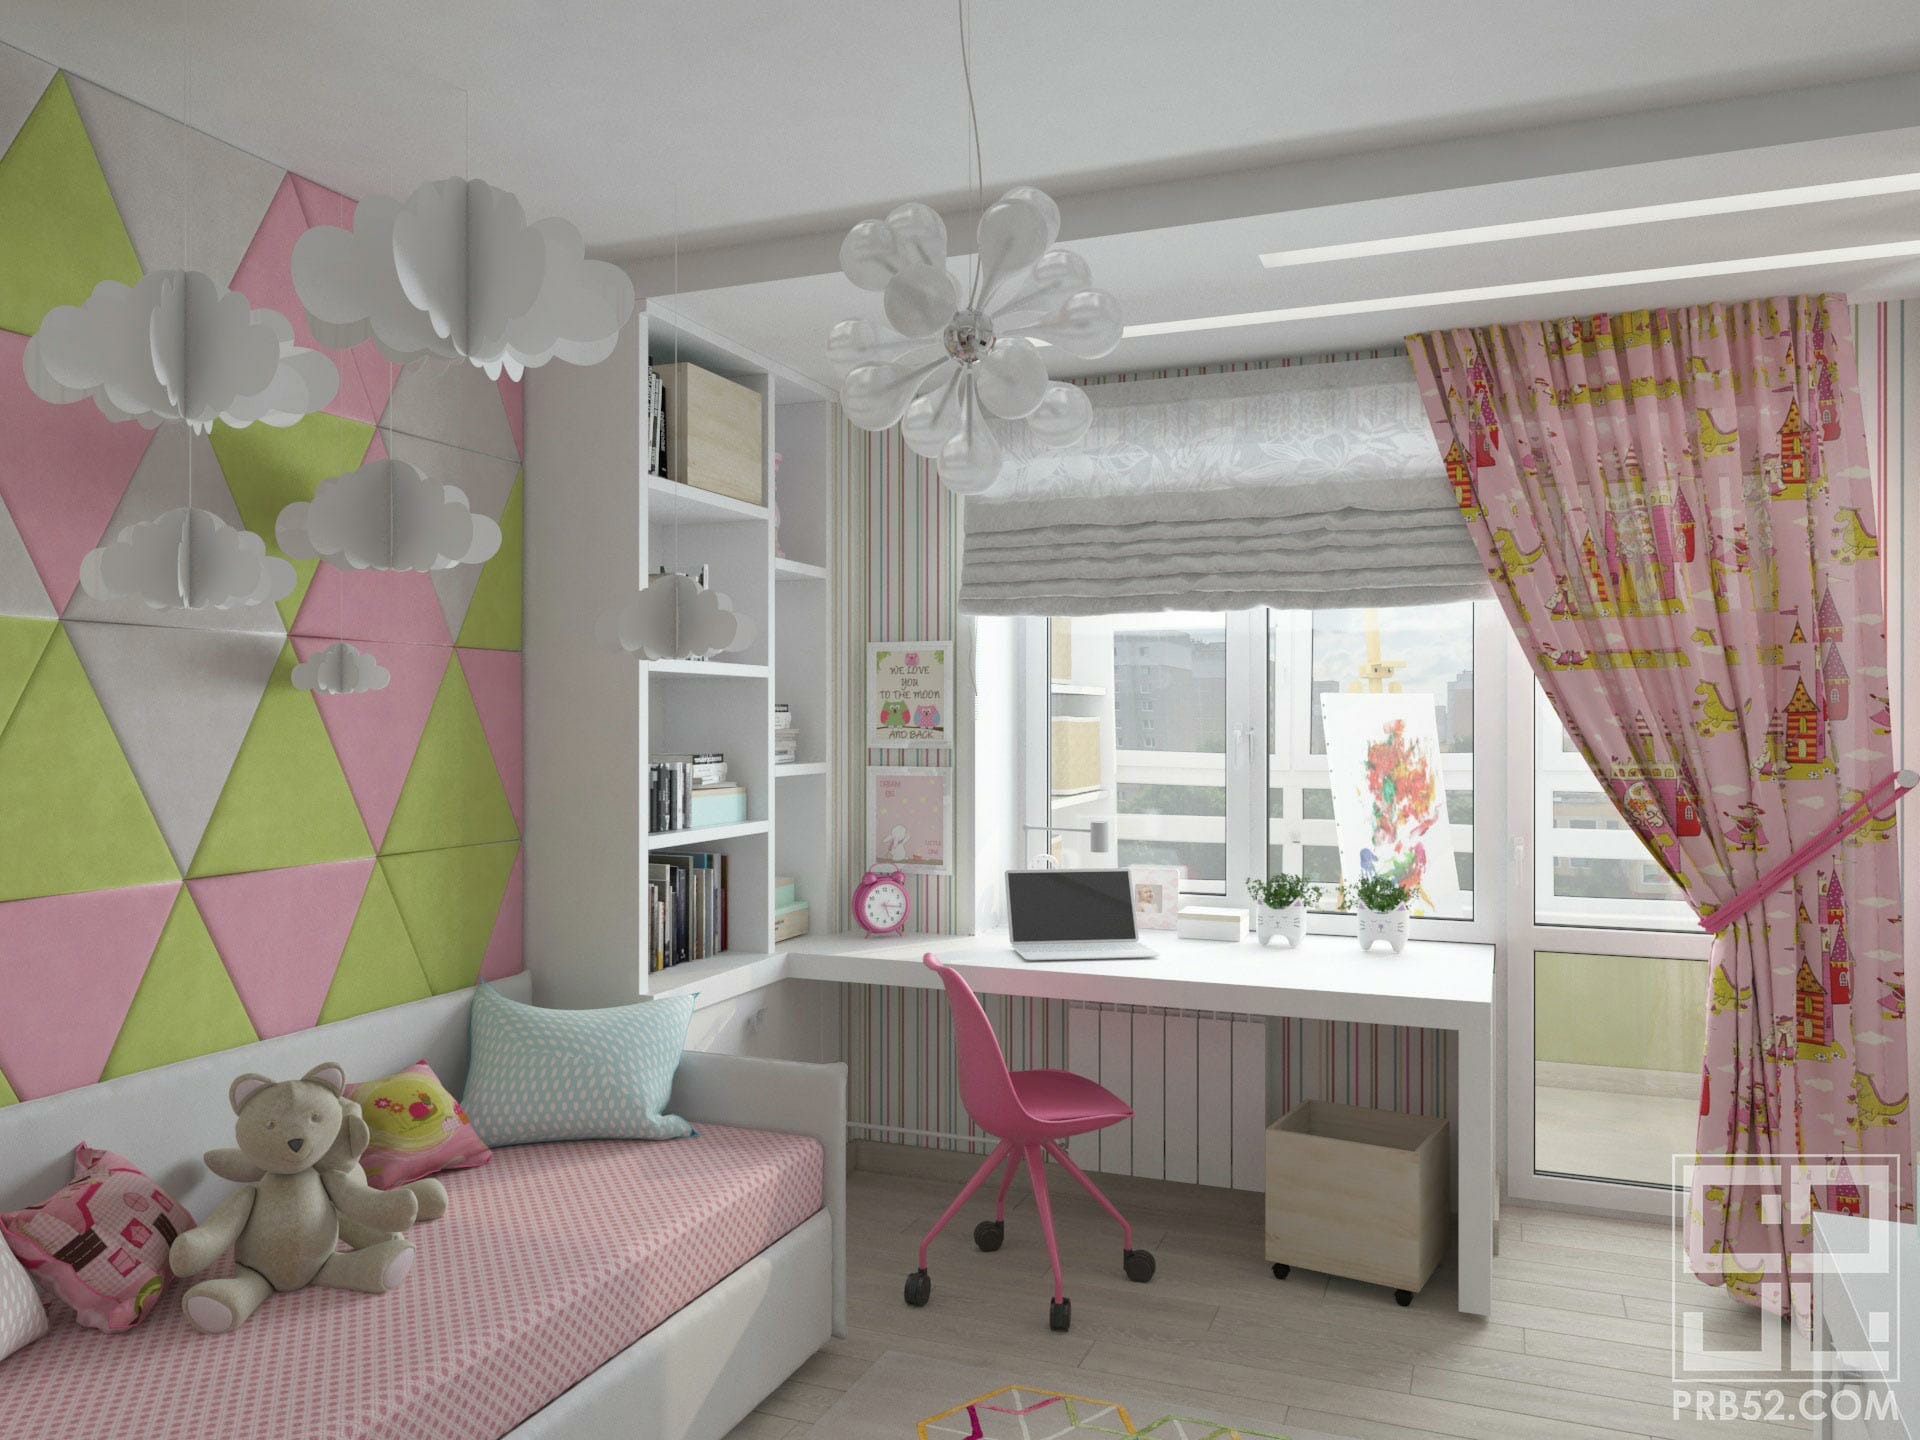 дизайн интерьера детской комнаты